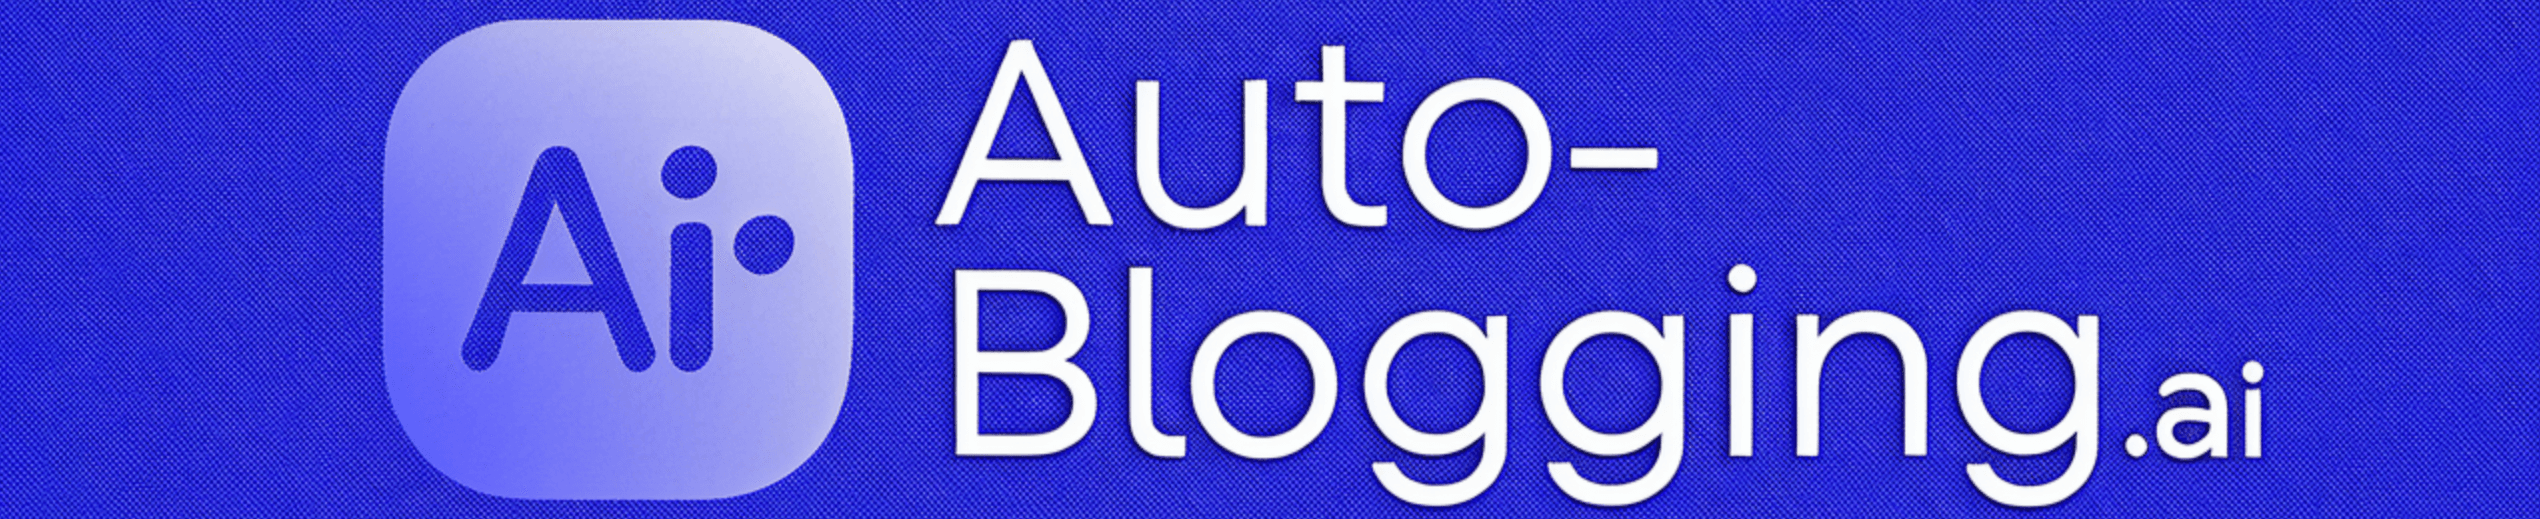 Auto-blogging.ai logo